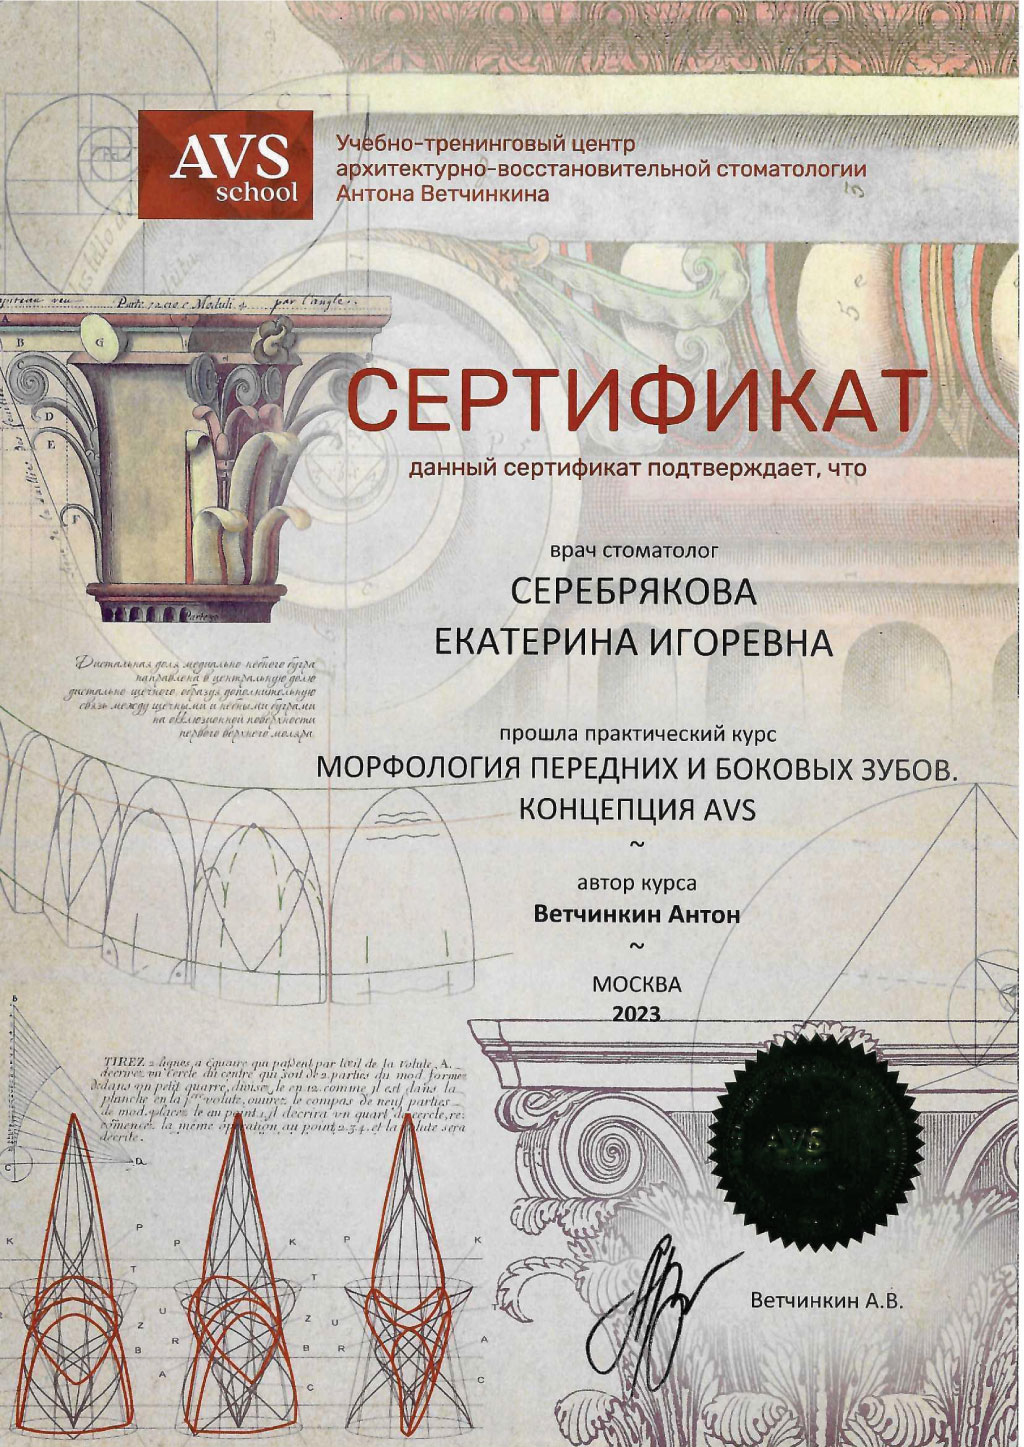 Сертификат стоматолога Серебряковой Екатерины: Морфология передних и боковых зубов, концепция AVS